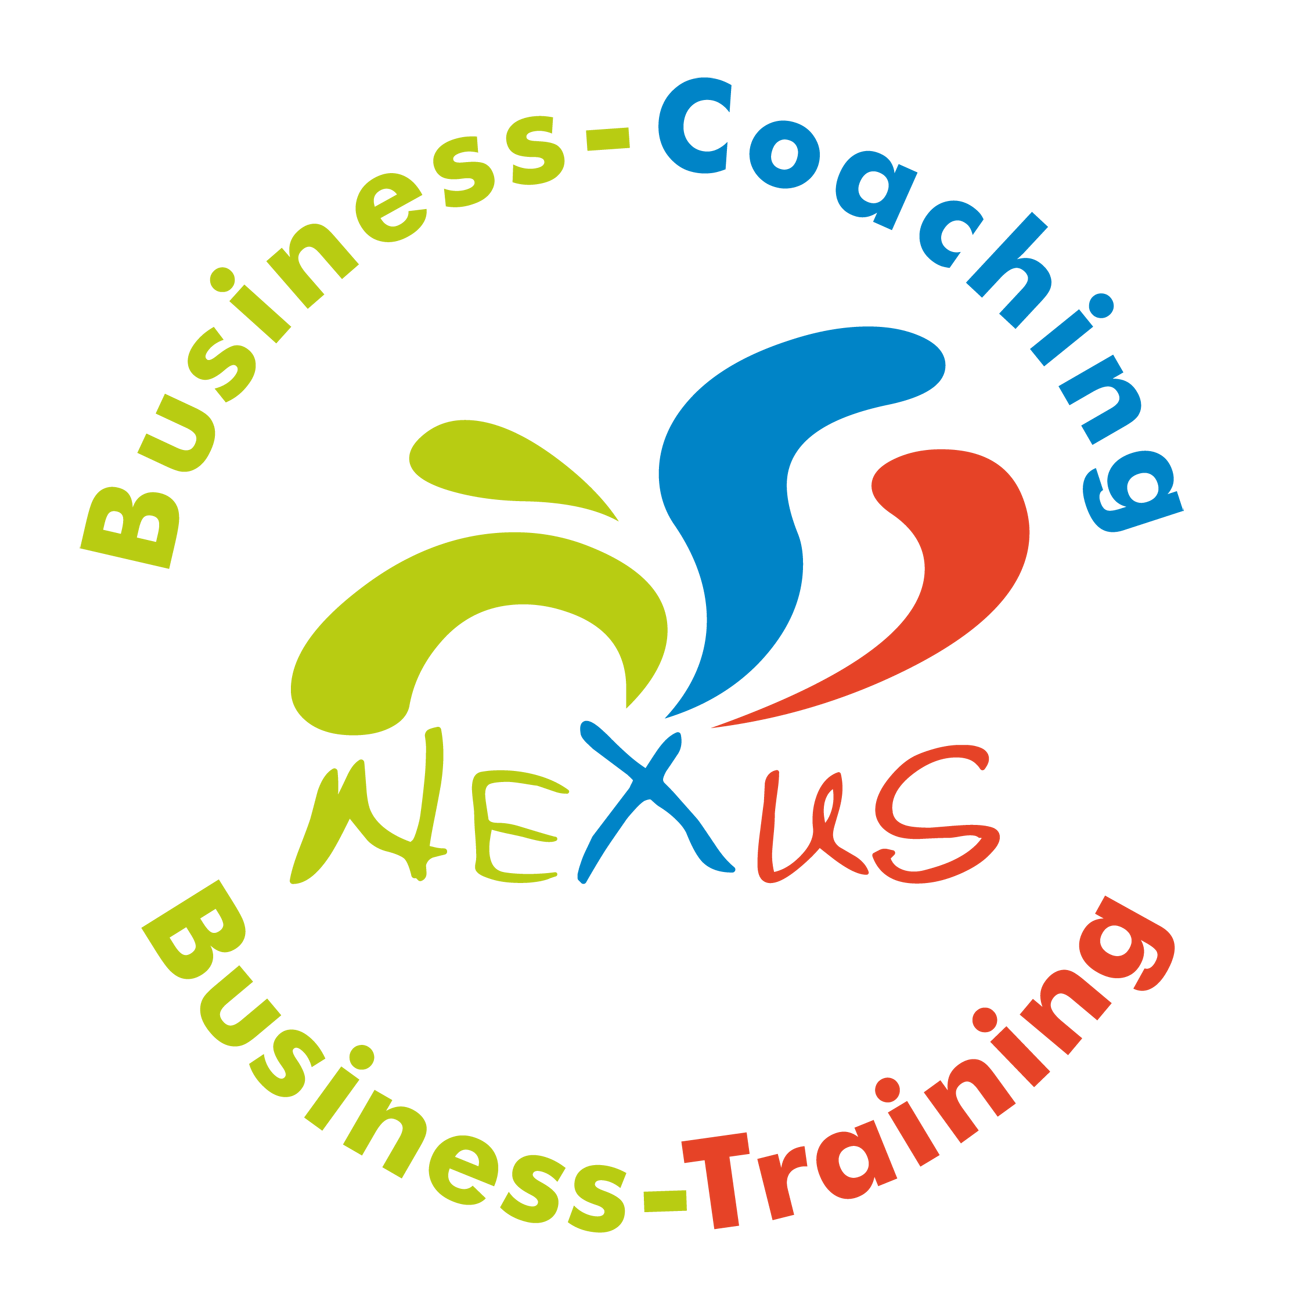 Business-Coaching Waiblingen, Business-Einzelcoaching, Business-Training, Führungskräfte-Coaching Waiblingen, Führungskräfte-Training, Kommunikationstraining, Persönlichkeitstraining